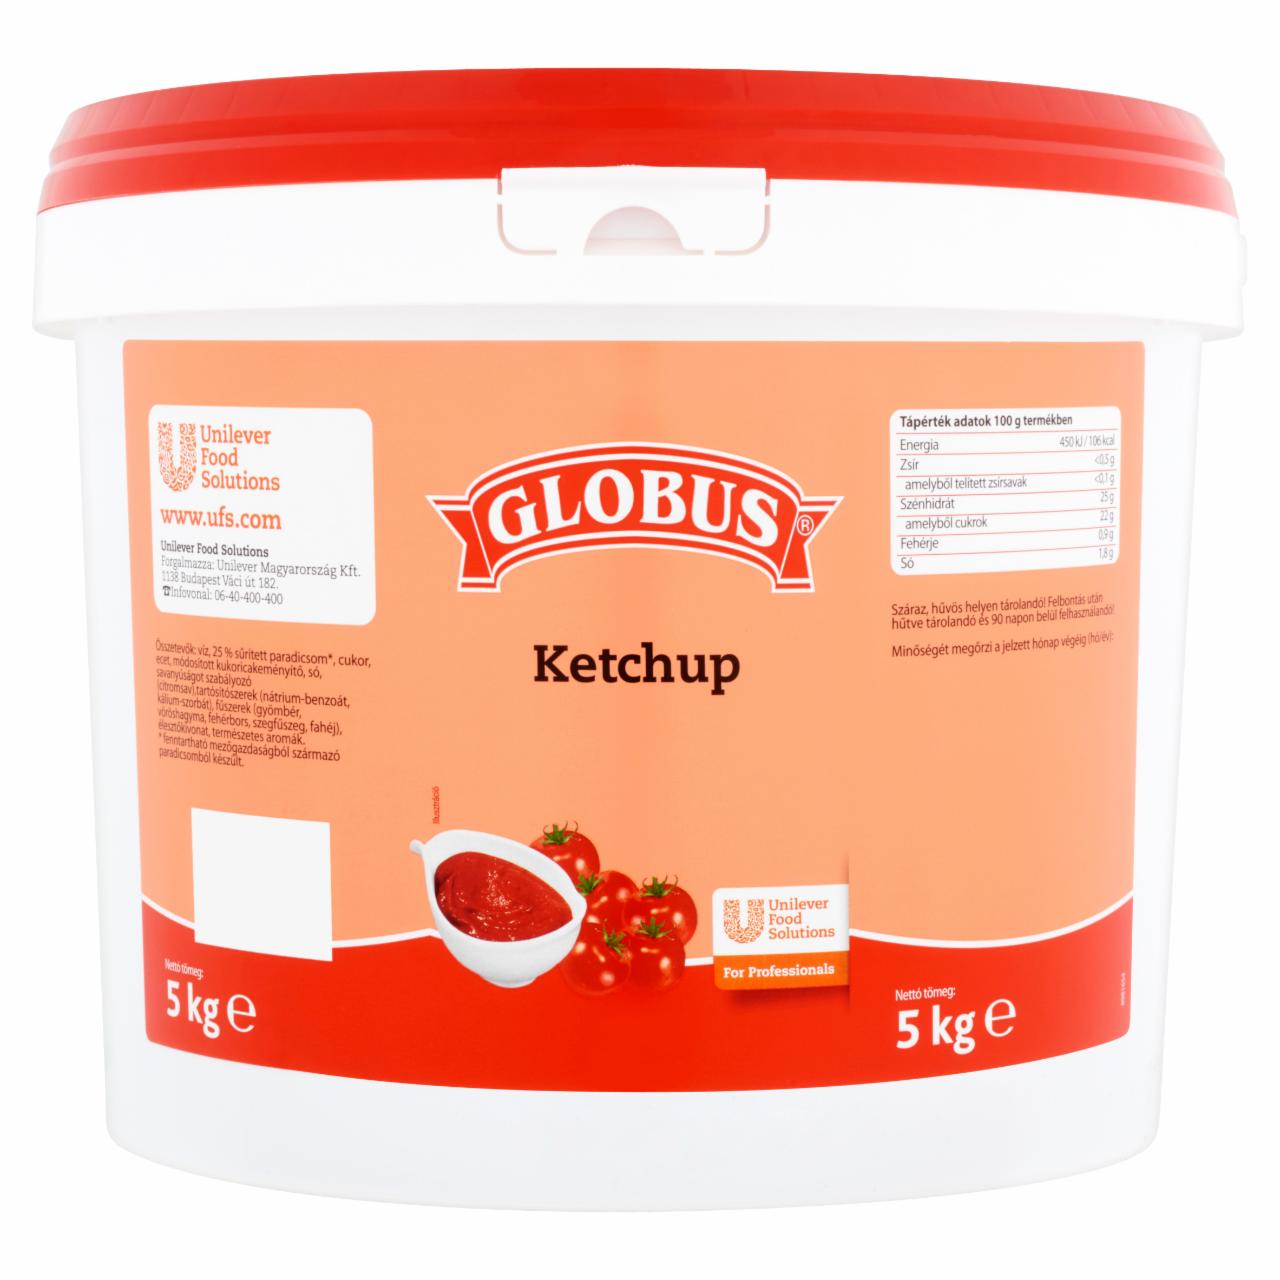 Képek - Globus ketchup 5 kg